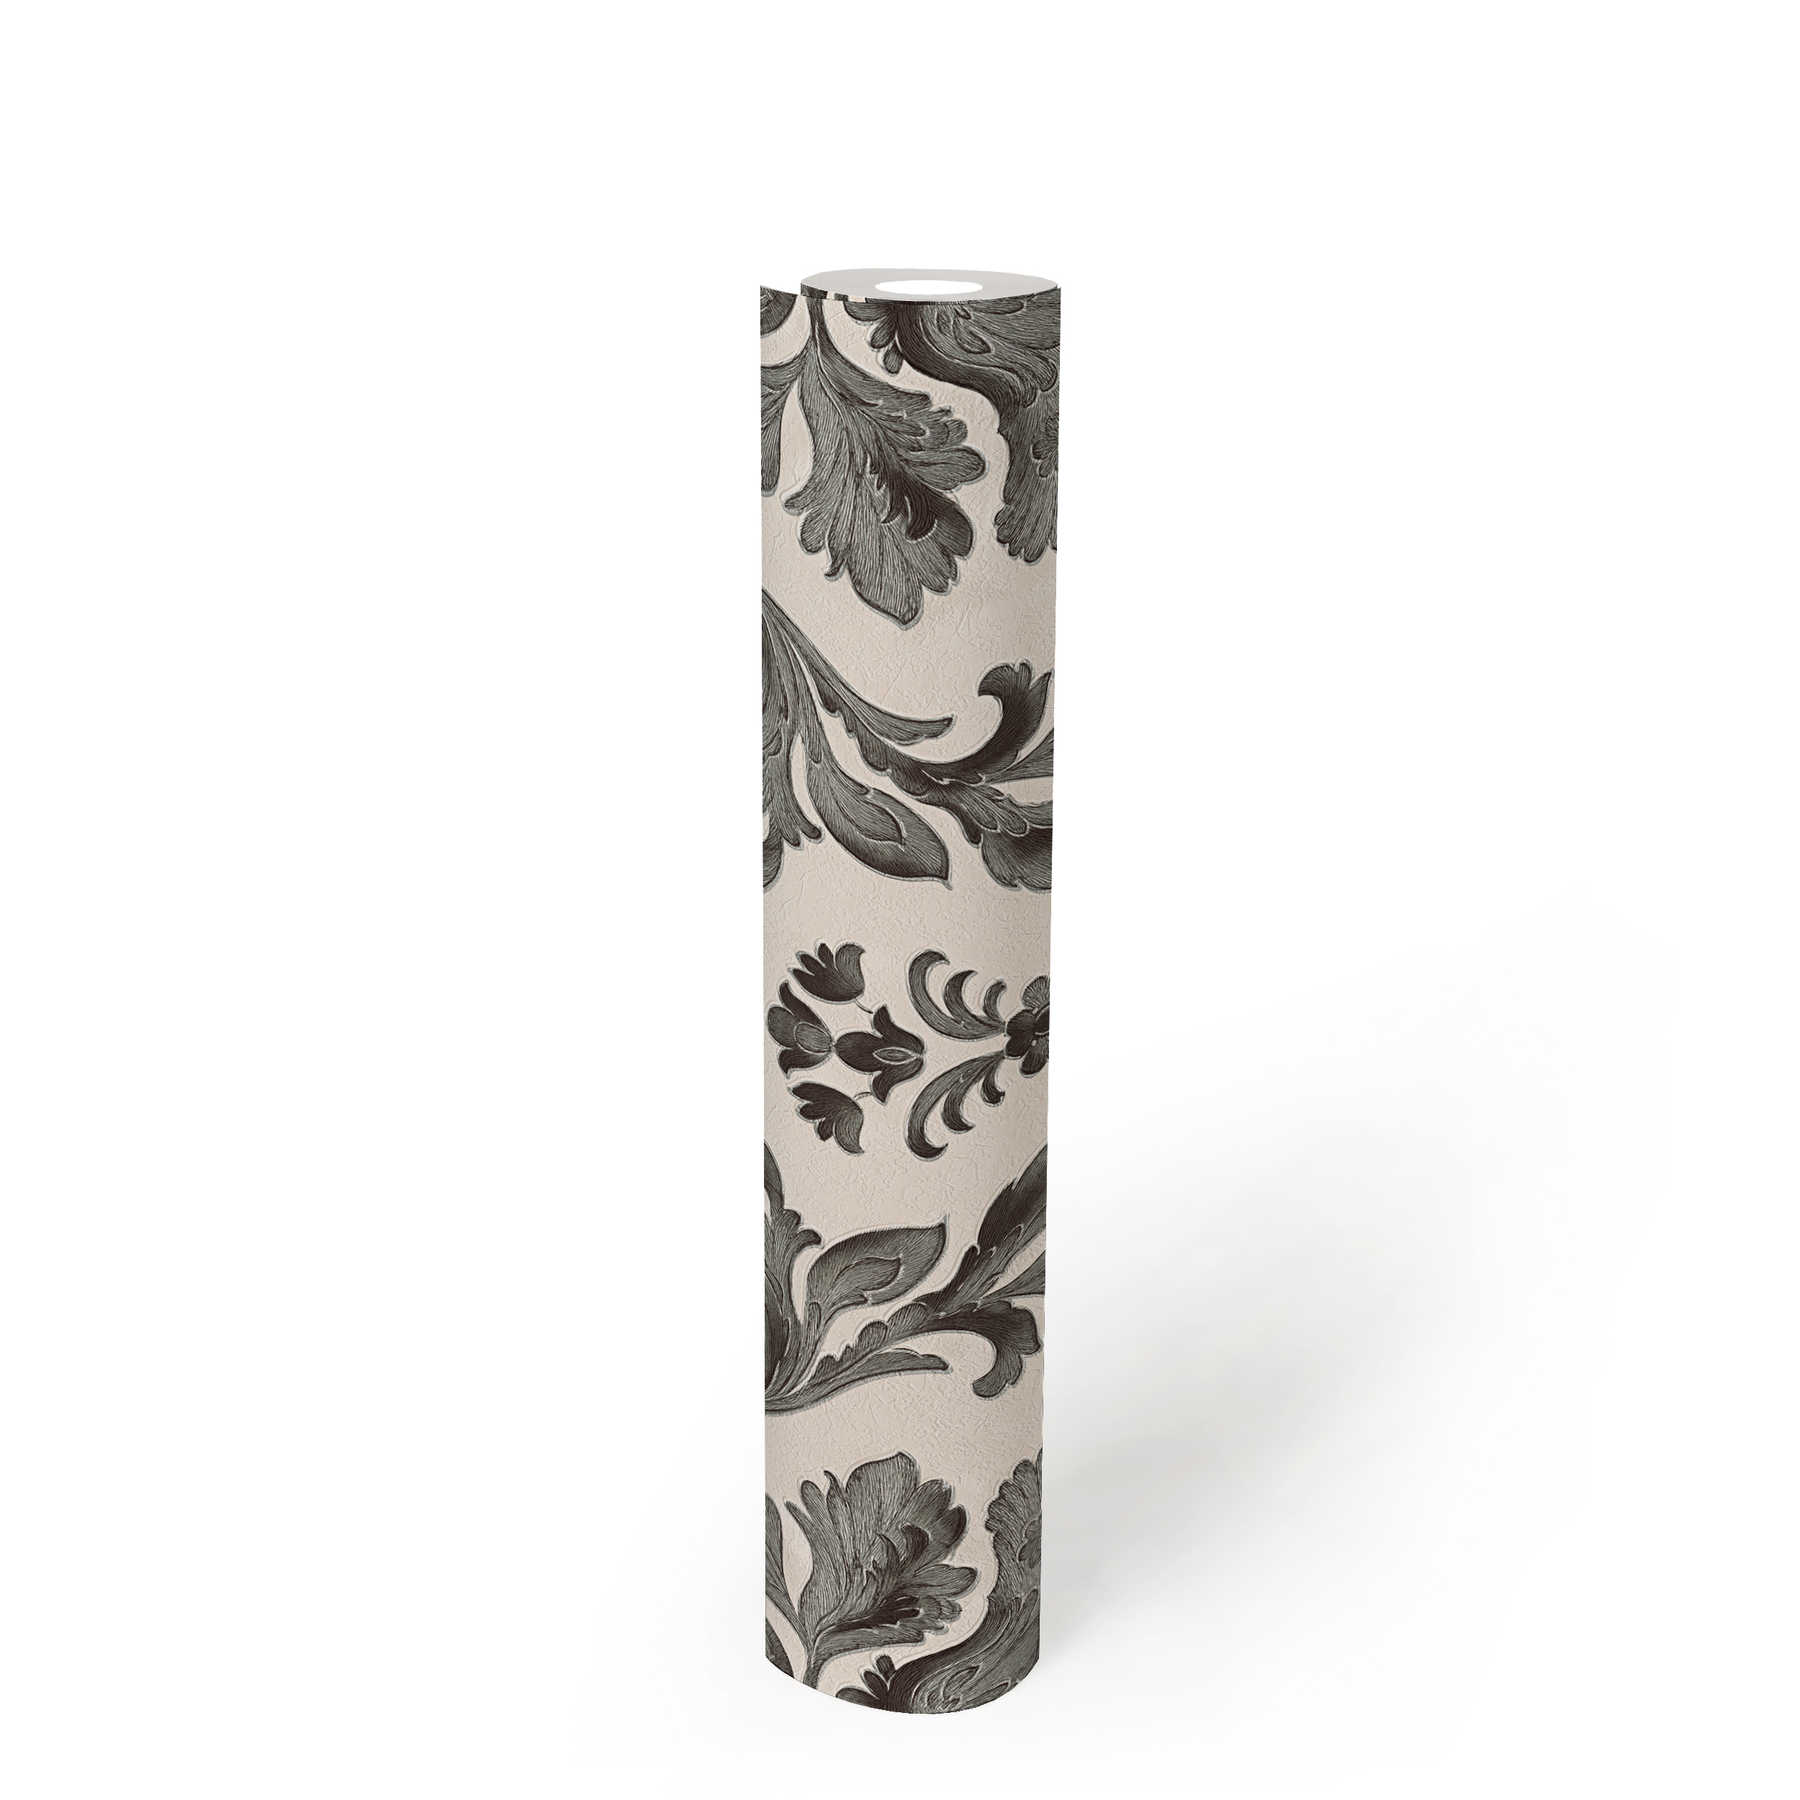             Papier peint avec ornements détaillés de style floral - noir, blanc
        